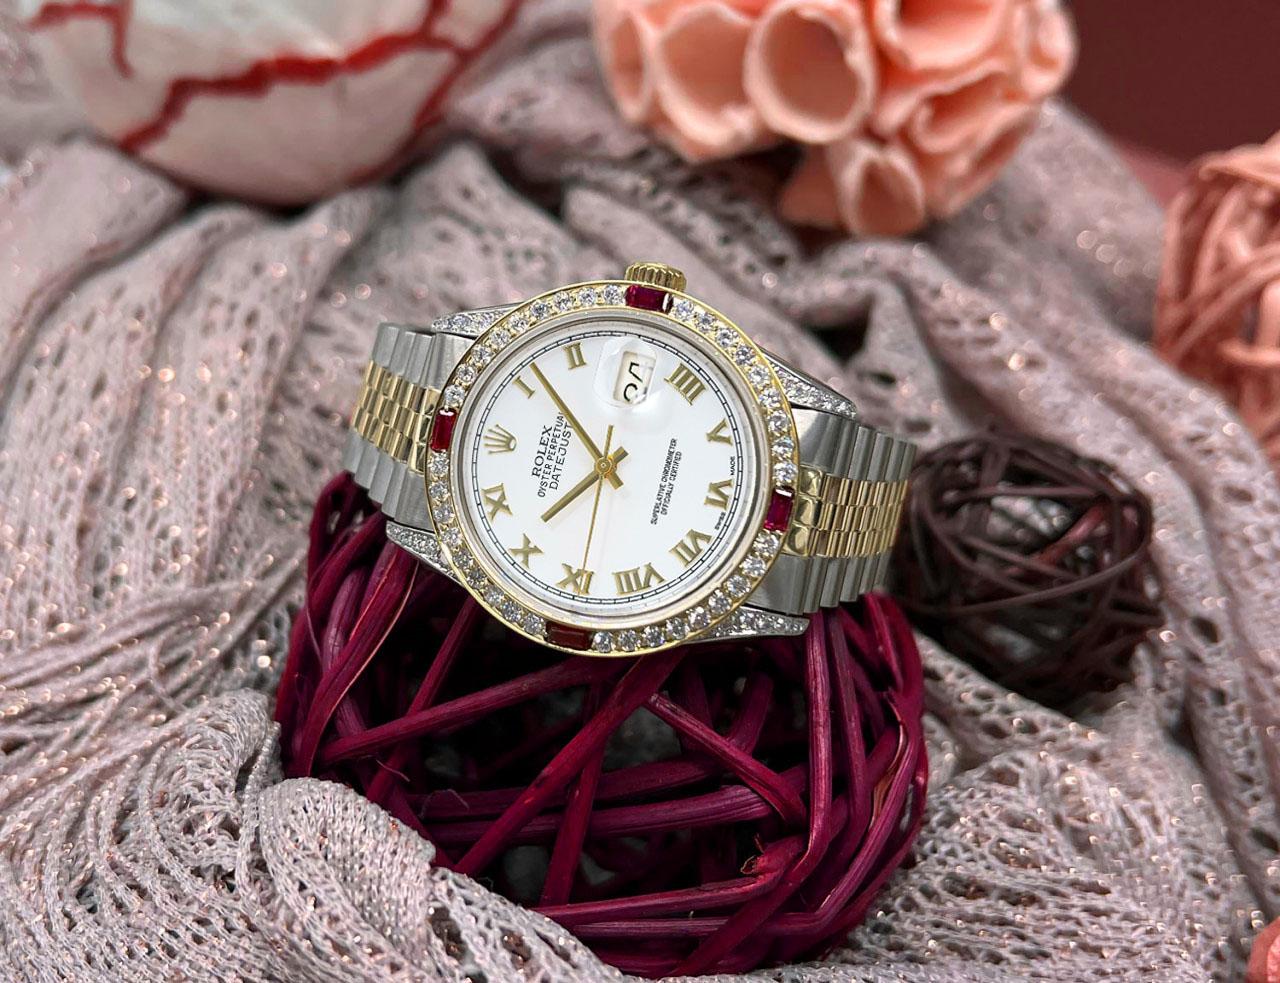 Rolex Datejust 36mm Weißes Römisches Zifferblatt Diamanten Lugs/Lünette Diamant und Rubin Uhr

Wir sind sehr stolz darauf, diesen Zeitmesser zu präsentieren, der sich in einem tadellosen Zustand befindet. Er wurde professionell poliert und gewartet,